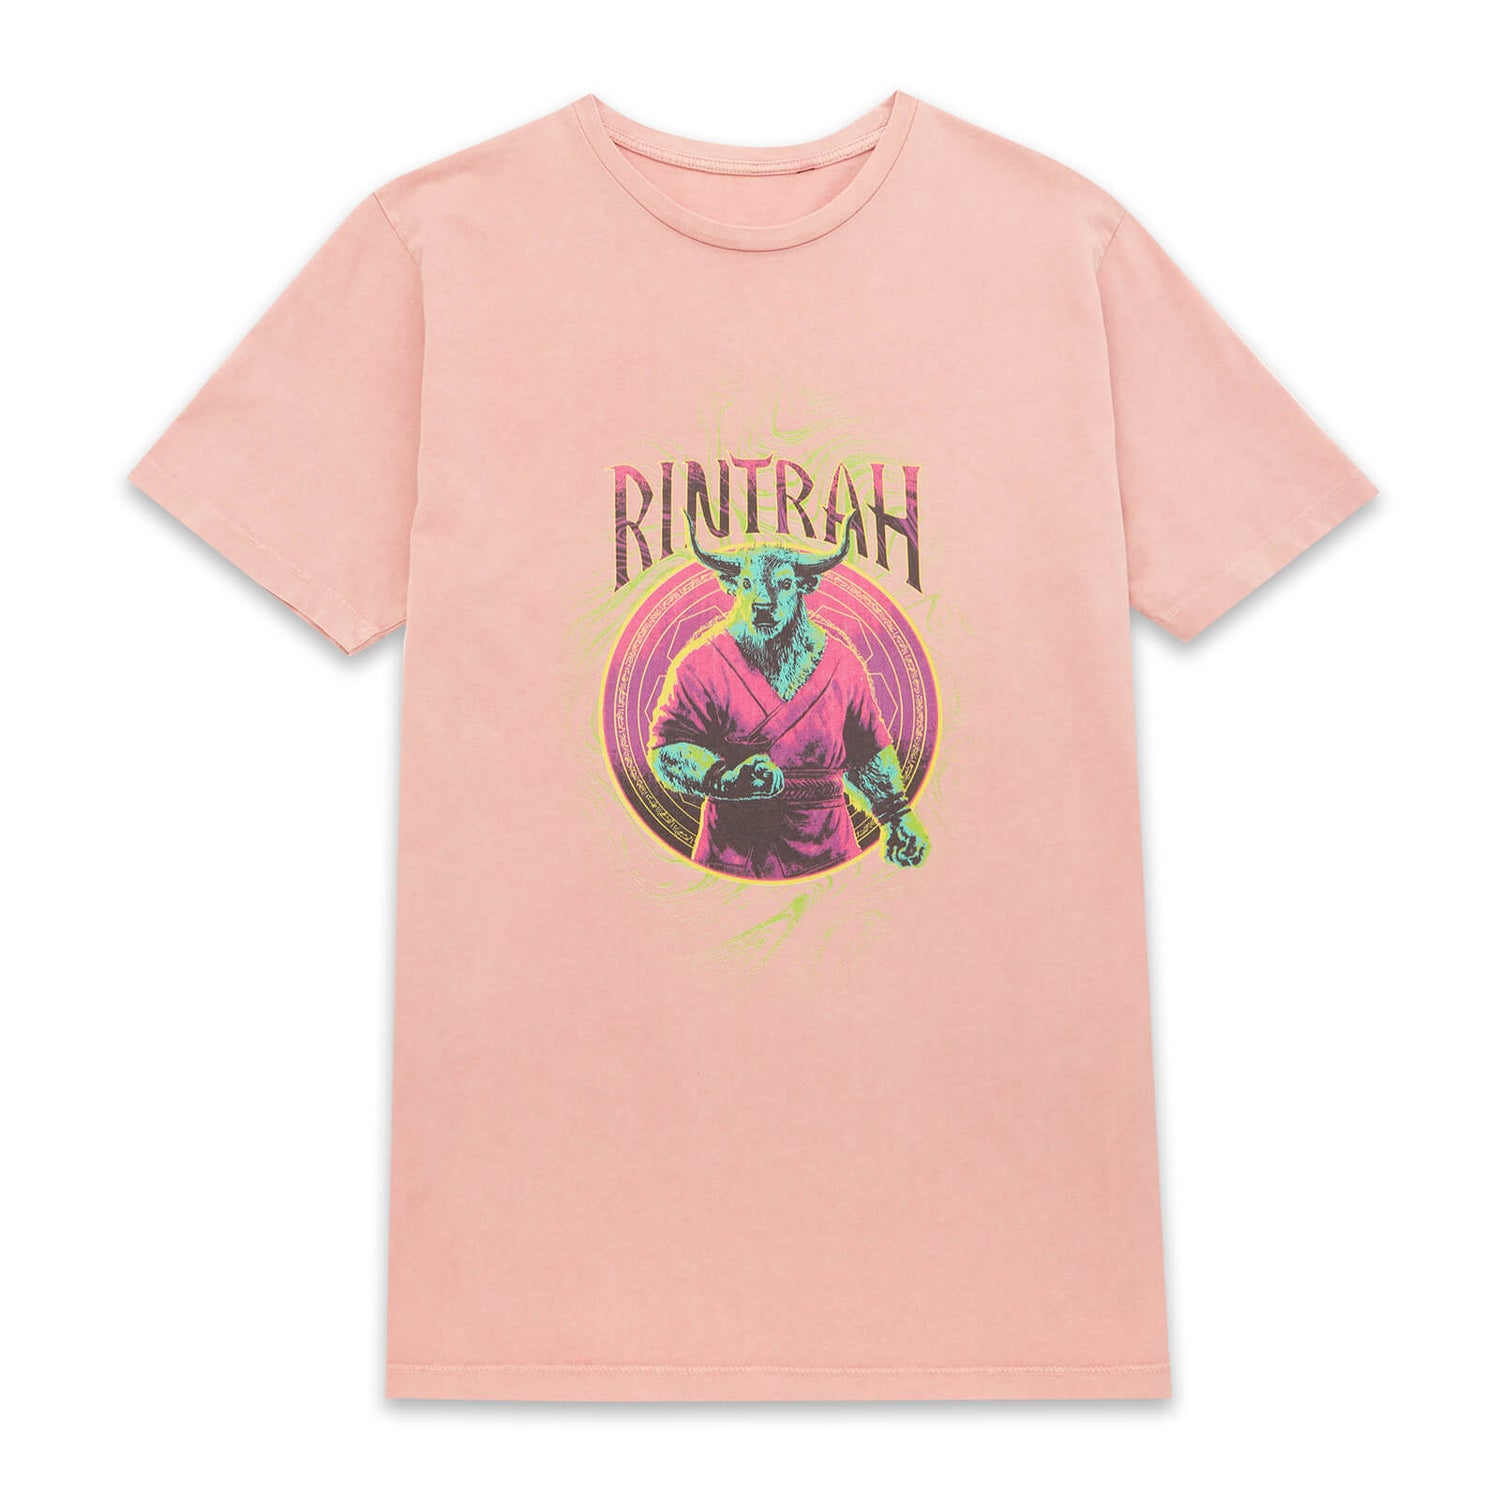 Camiseta unisex Dr Strange Rintrah de Marvel - Pink Acid Wash